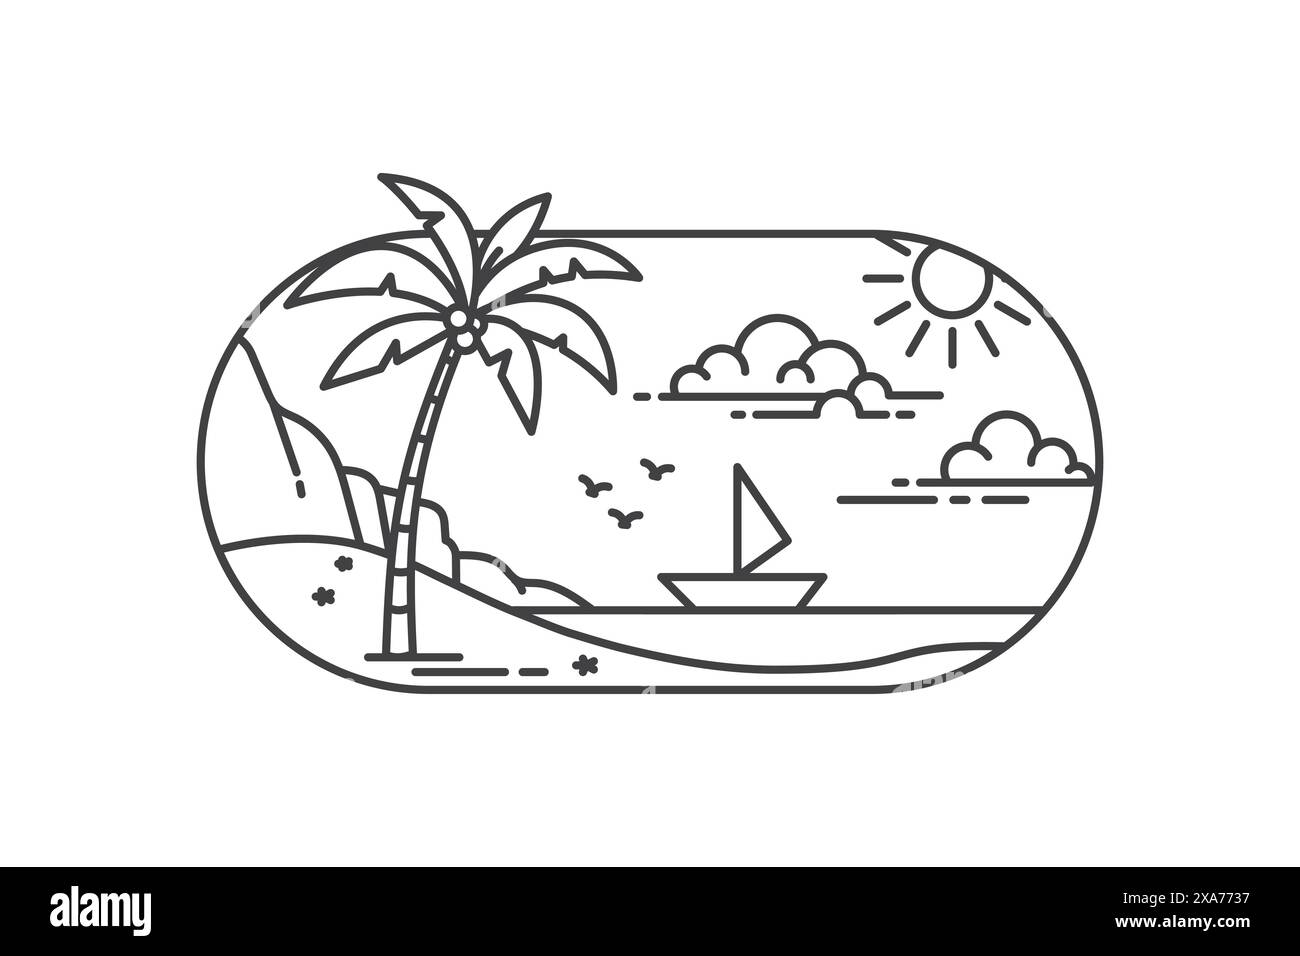 Line Art Design Illustration des Sommers auf einer tropischen Insel mit einer ruhigen und friedlichen Atmosphäre Stock Vektor